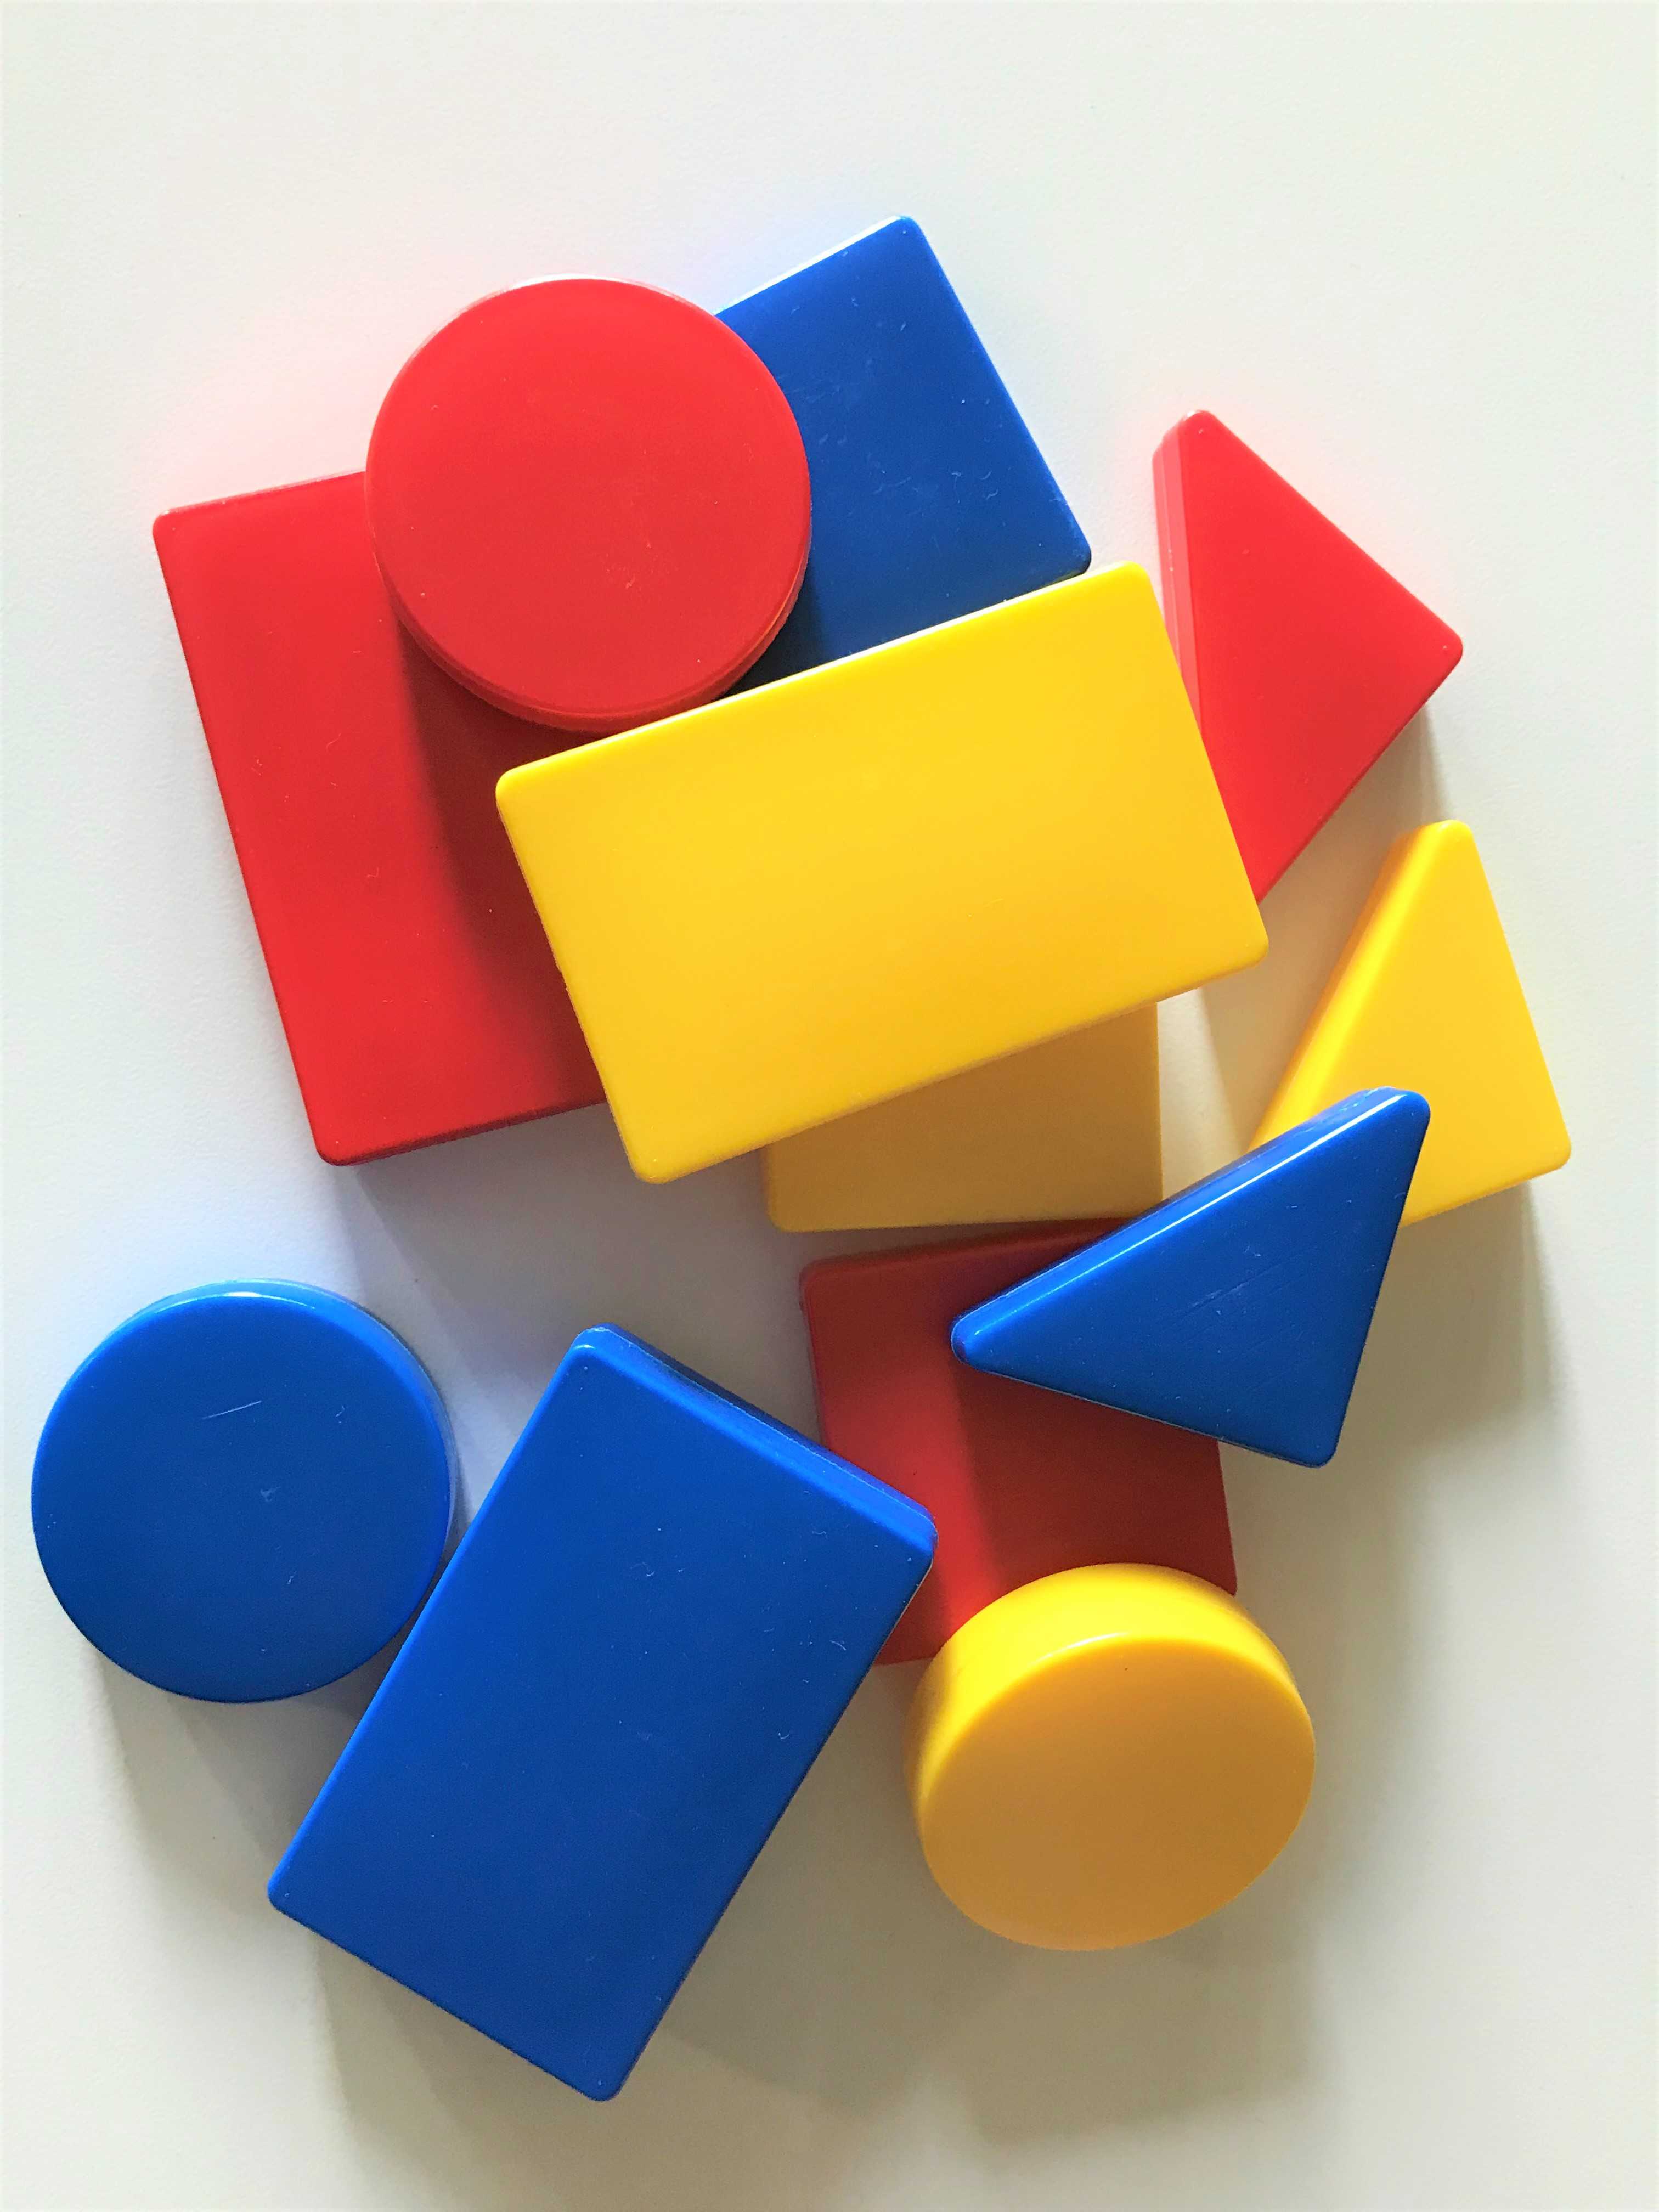 Логические блоки дьенеша как средство 
логико-математического развития 
детей дошкольного возраста | педагогический опыт в доу  | педтехнологии | международные конкурсы для педагогов